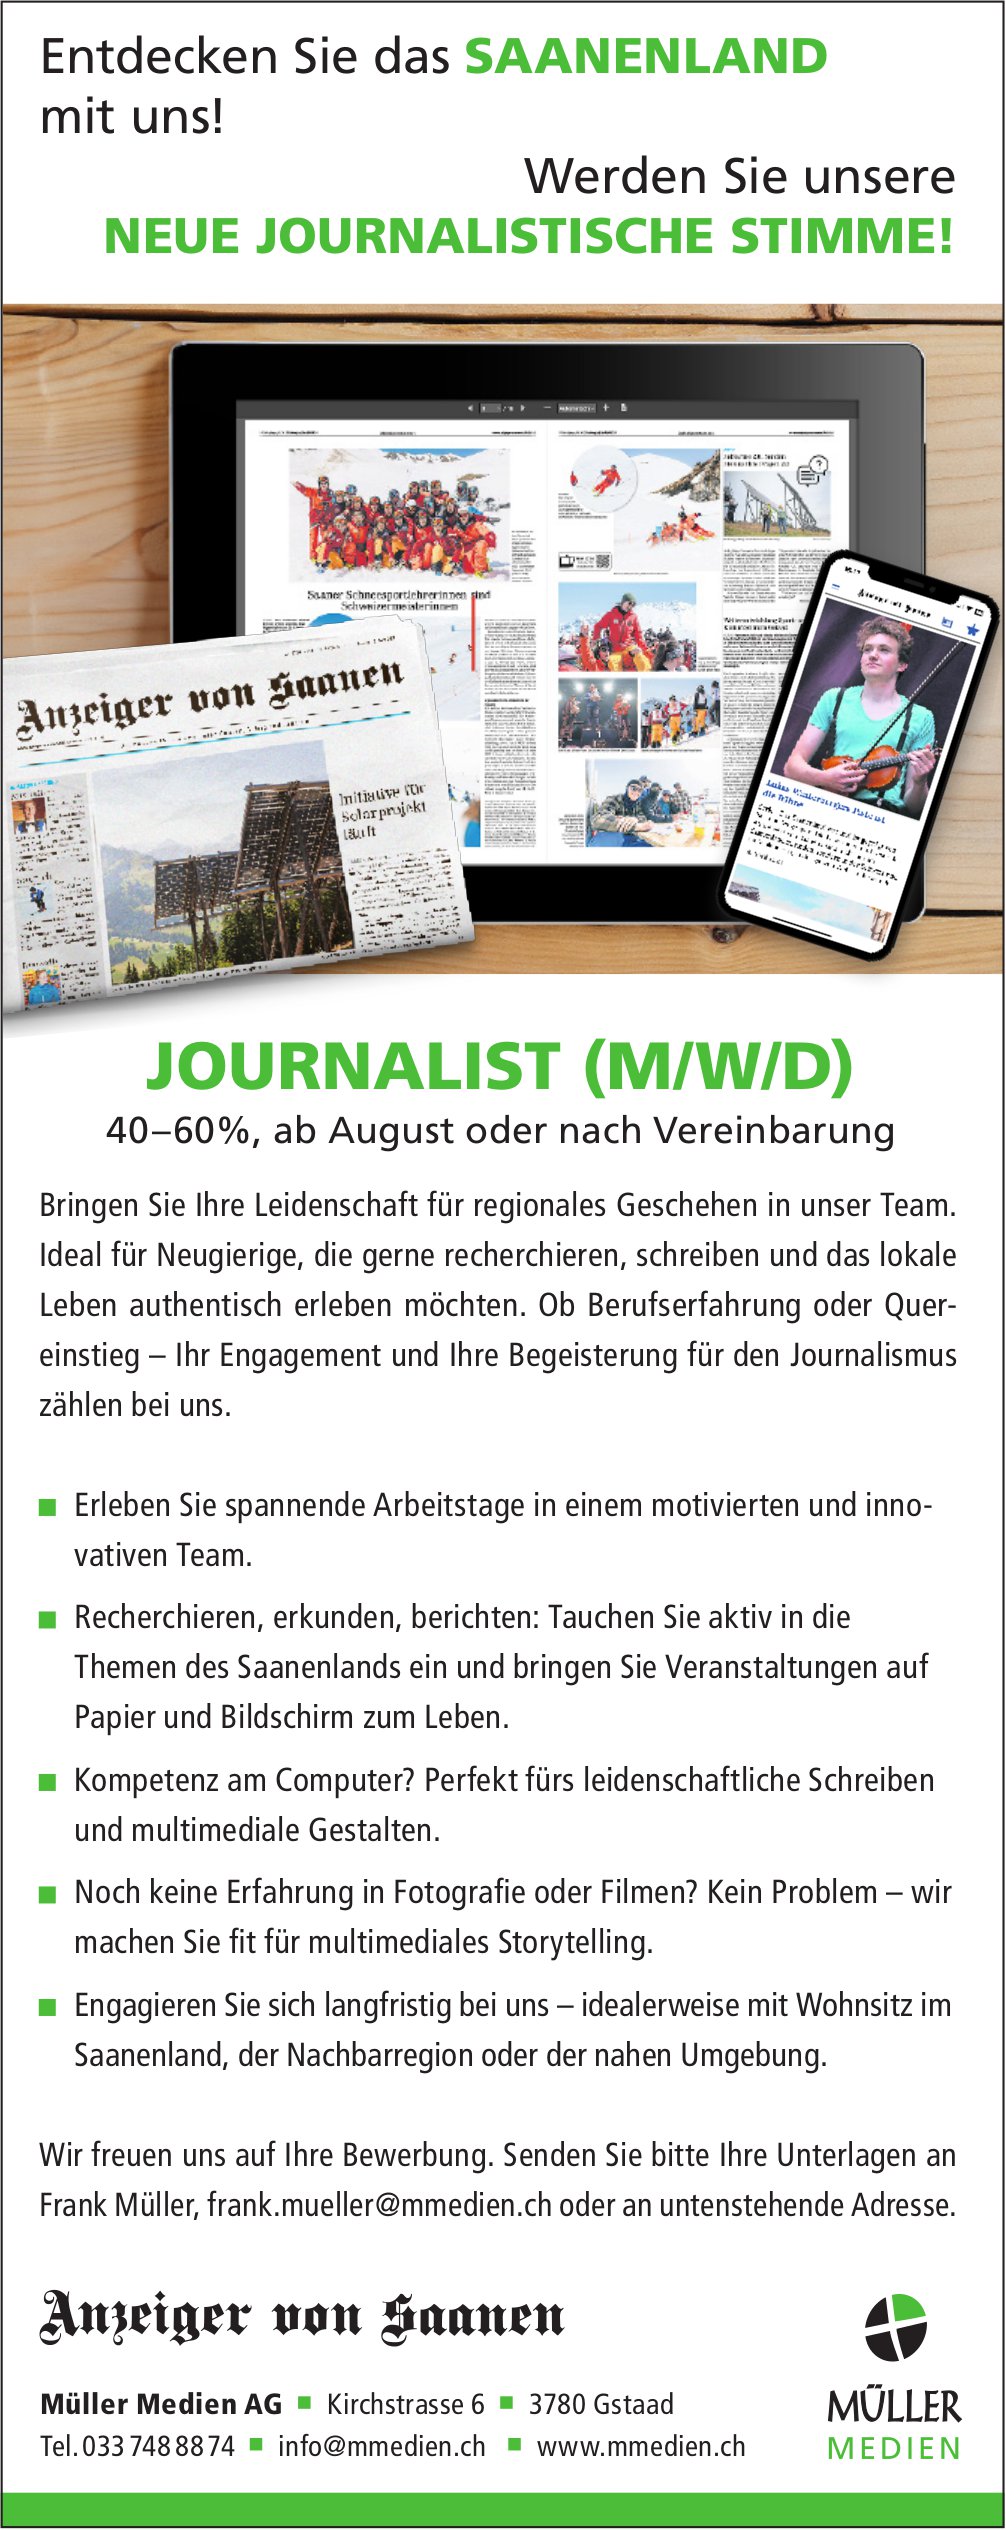 Journalist (m/w/d), Müller Medien AG, Gstaad, Gesucht